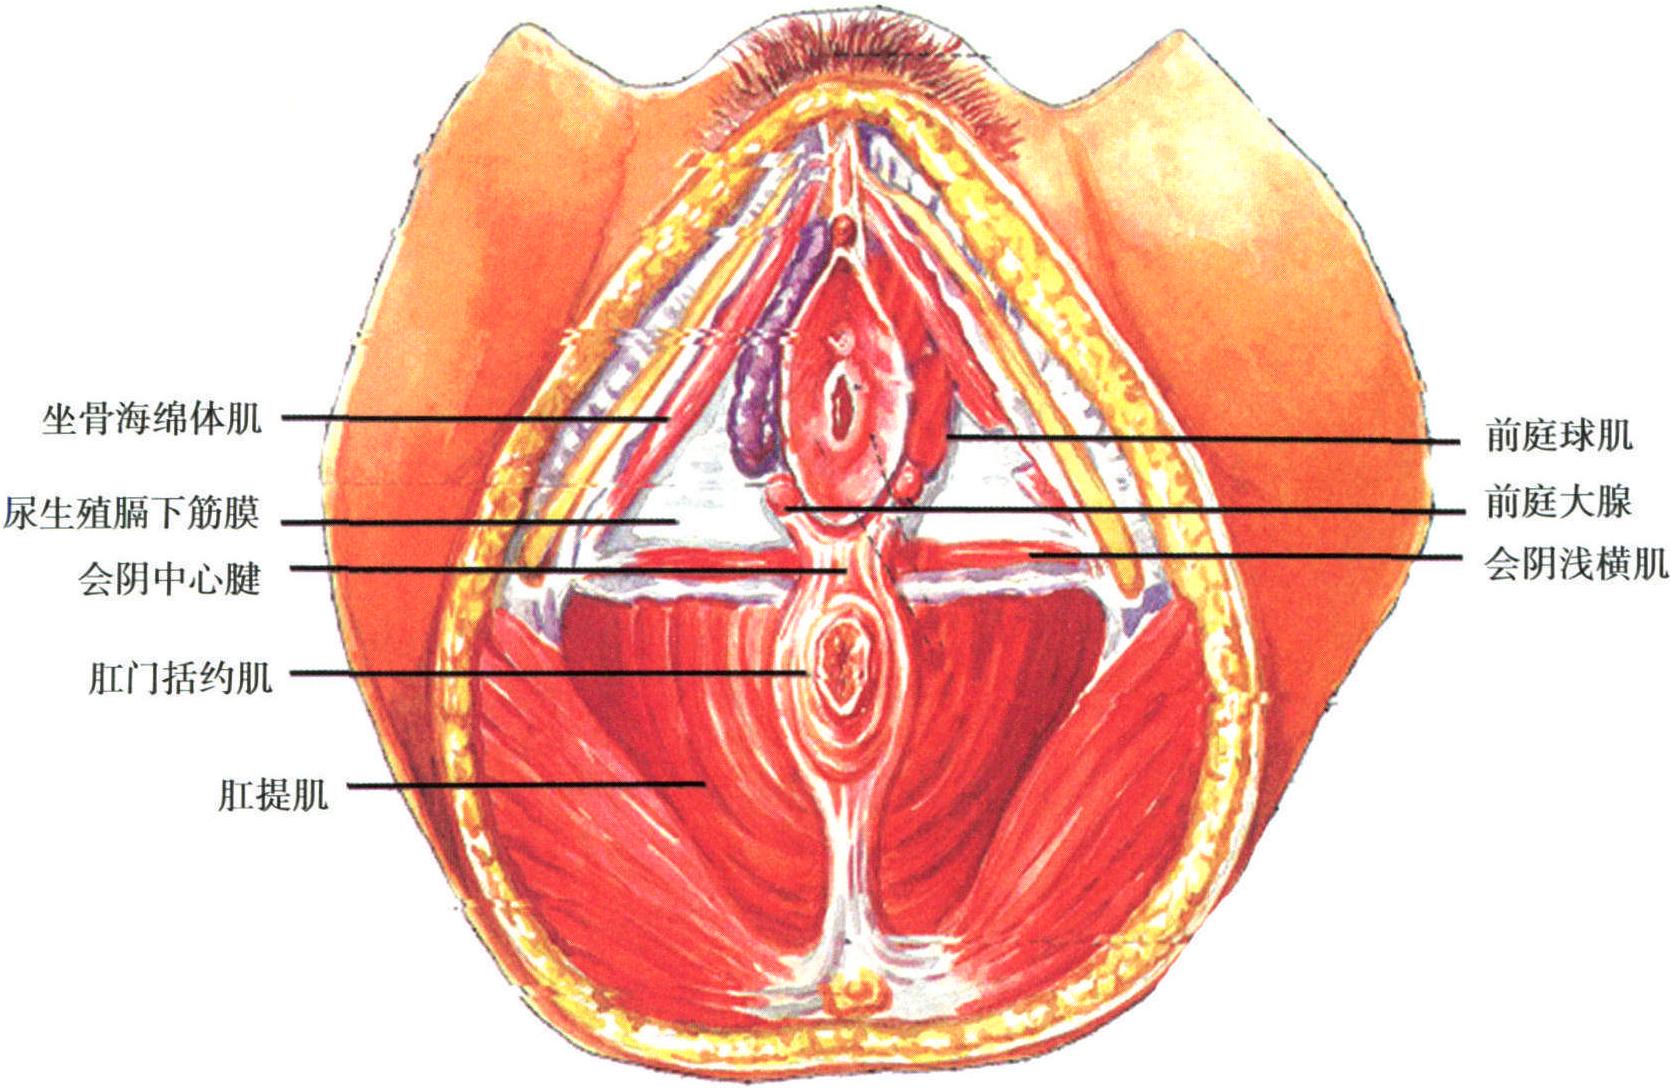 第一章 女性生殖器解剖